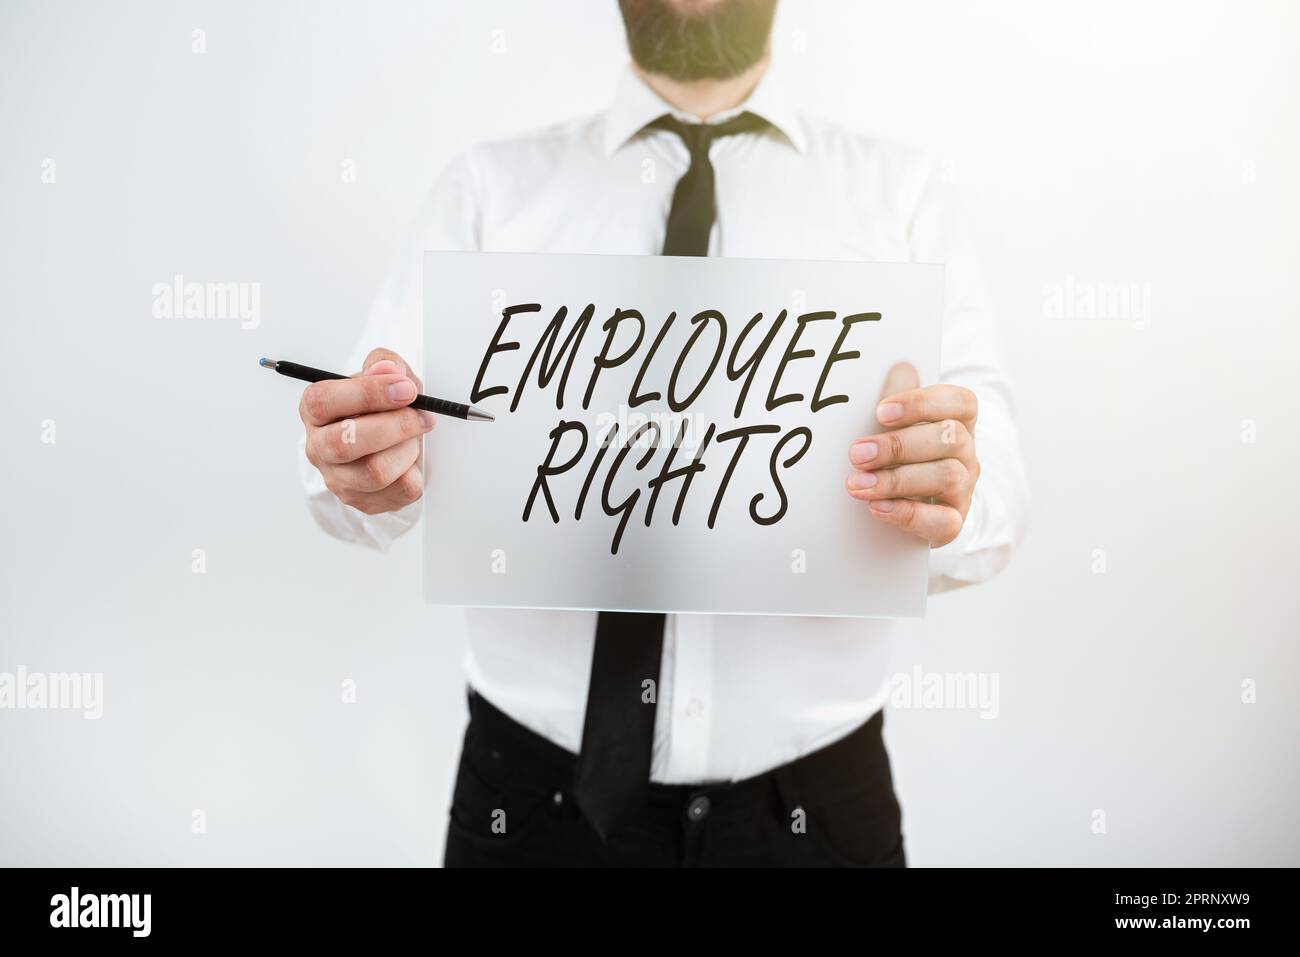 Konzeptionelle Anzeige Rechte Mitarbeiter Alle Mitarbeiter haben grundlegende Rechte an ihrem eigenen Arbeitsplatz. Geschäftskonzept Alle Mitarbeiter haben grundlegende Rechte an ihrem eigenen Arbeitsplatz Stockfoto